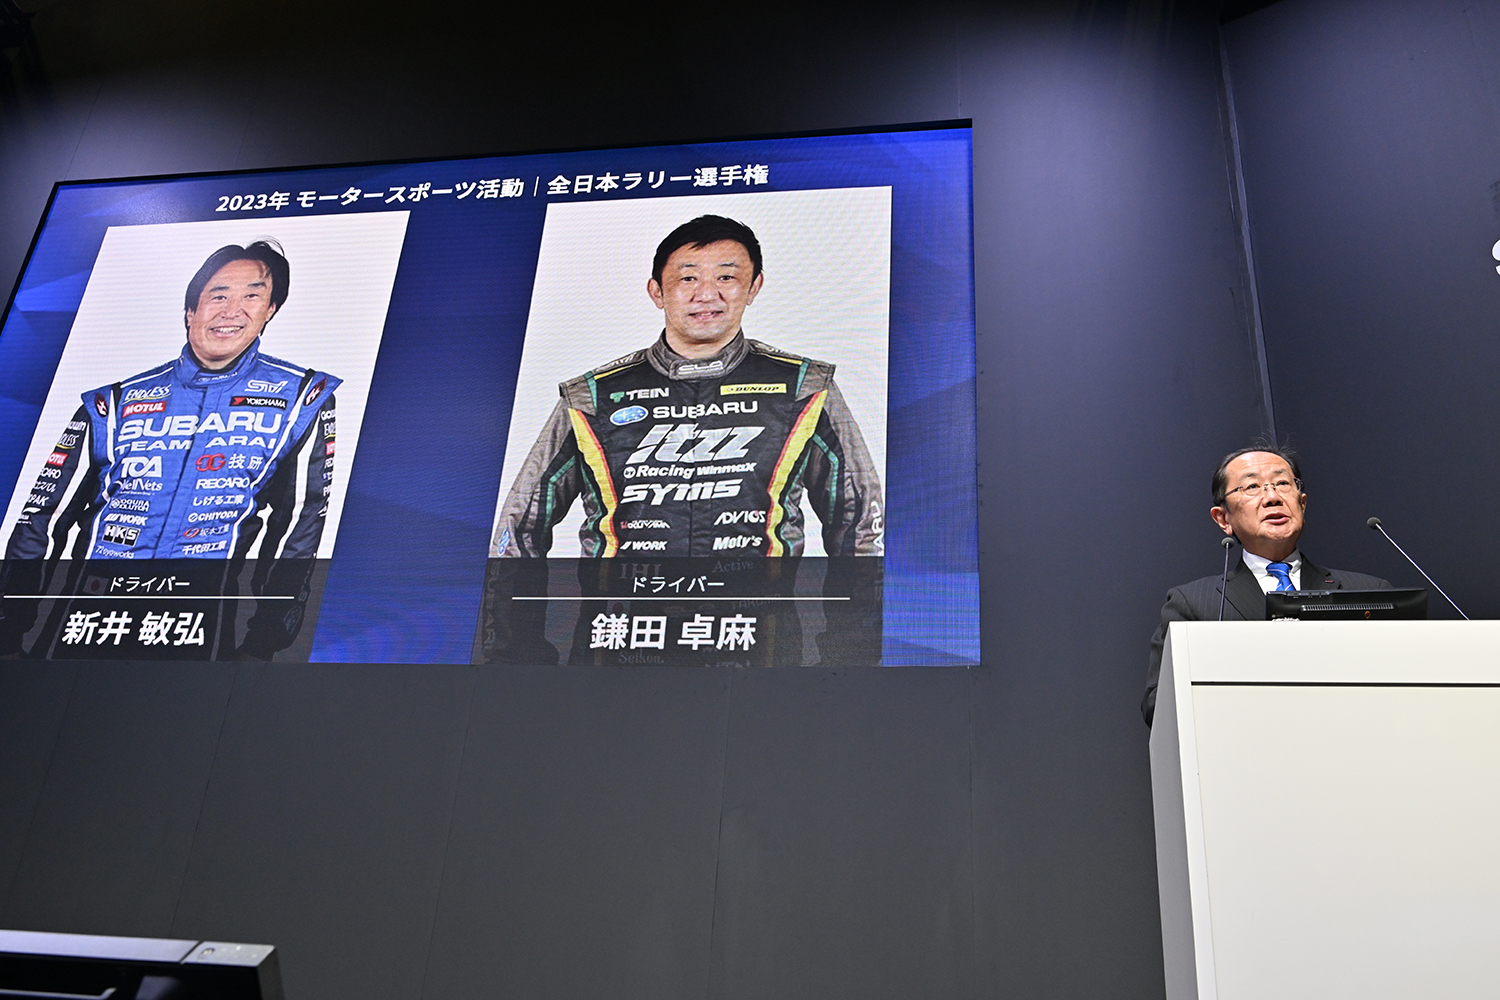 2023シーズン全日本ラリー選手権でのスバルチームの体制発表